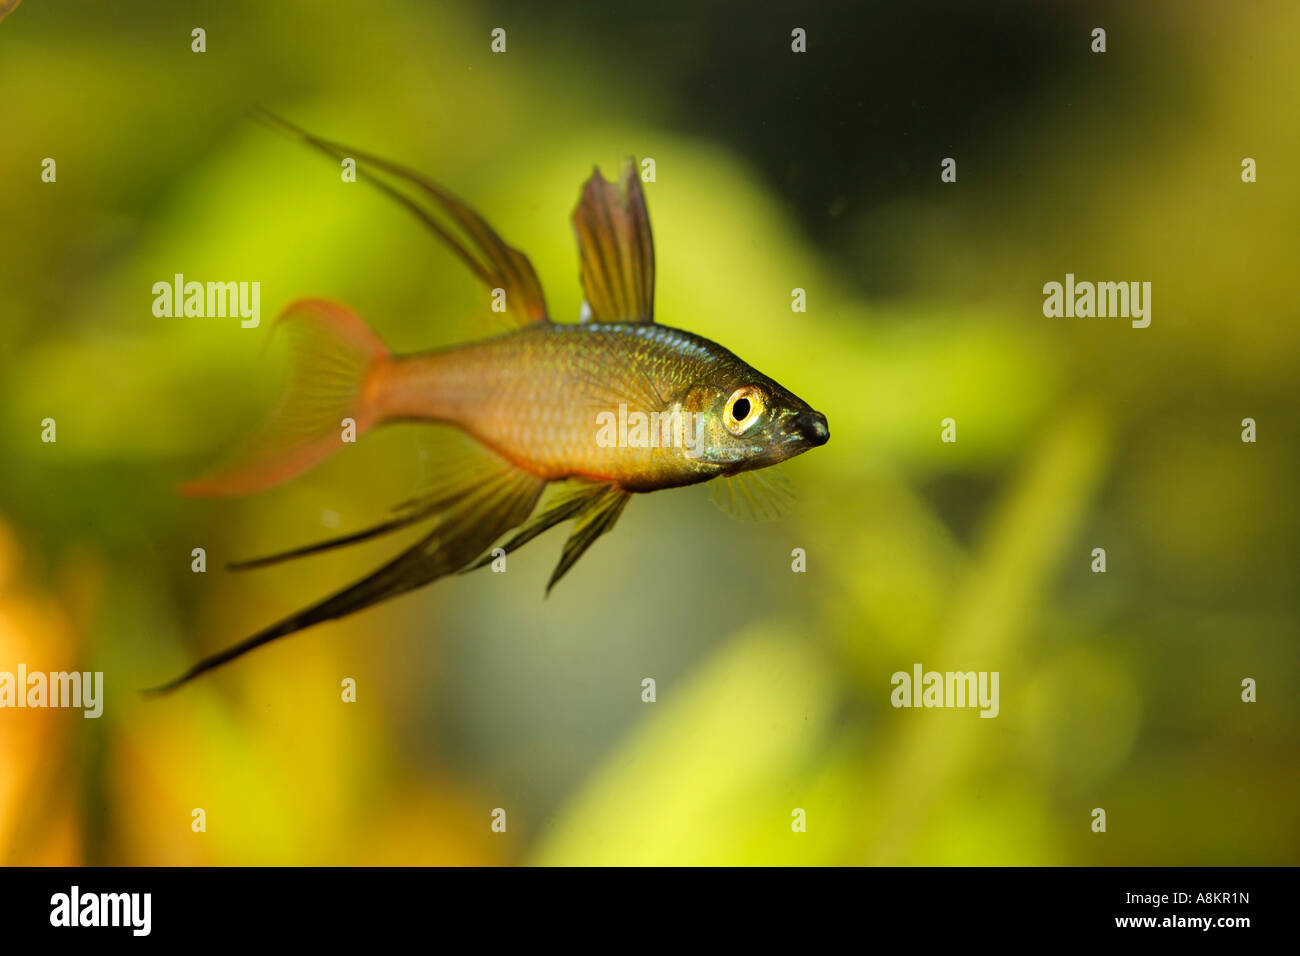 Threadfin rainbow fish, Iriatherina werneri, male Stock Photo